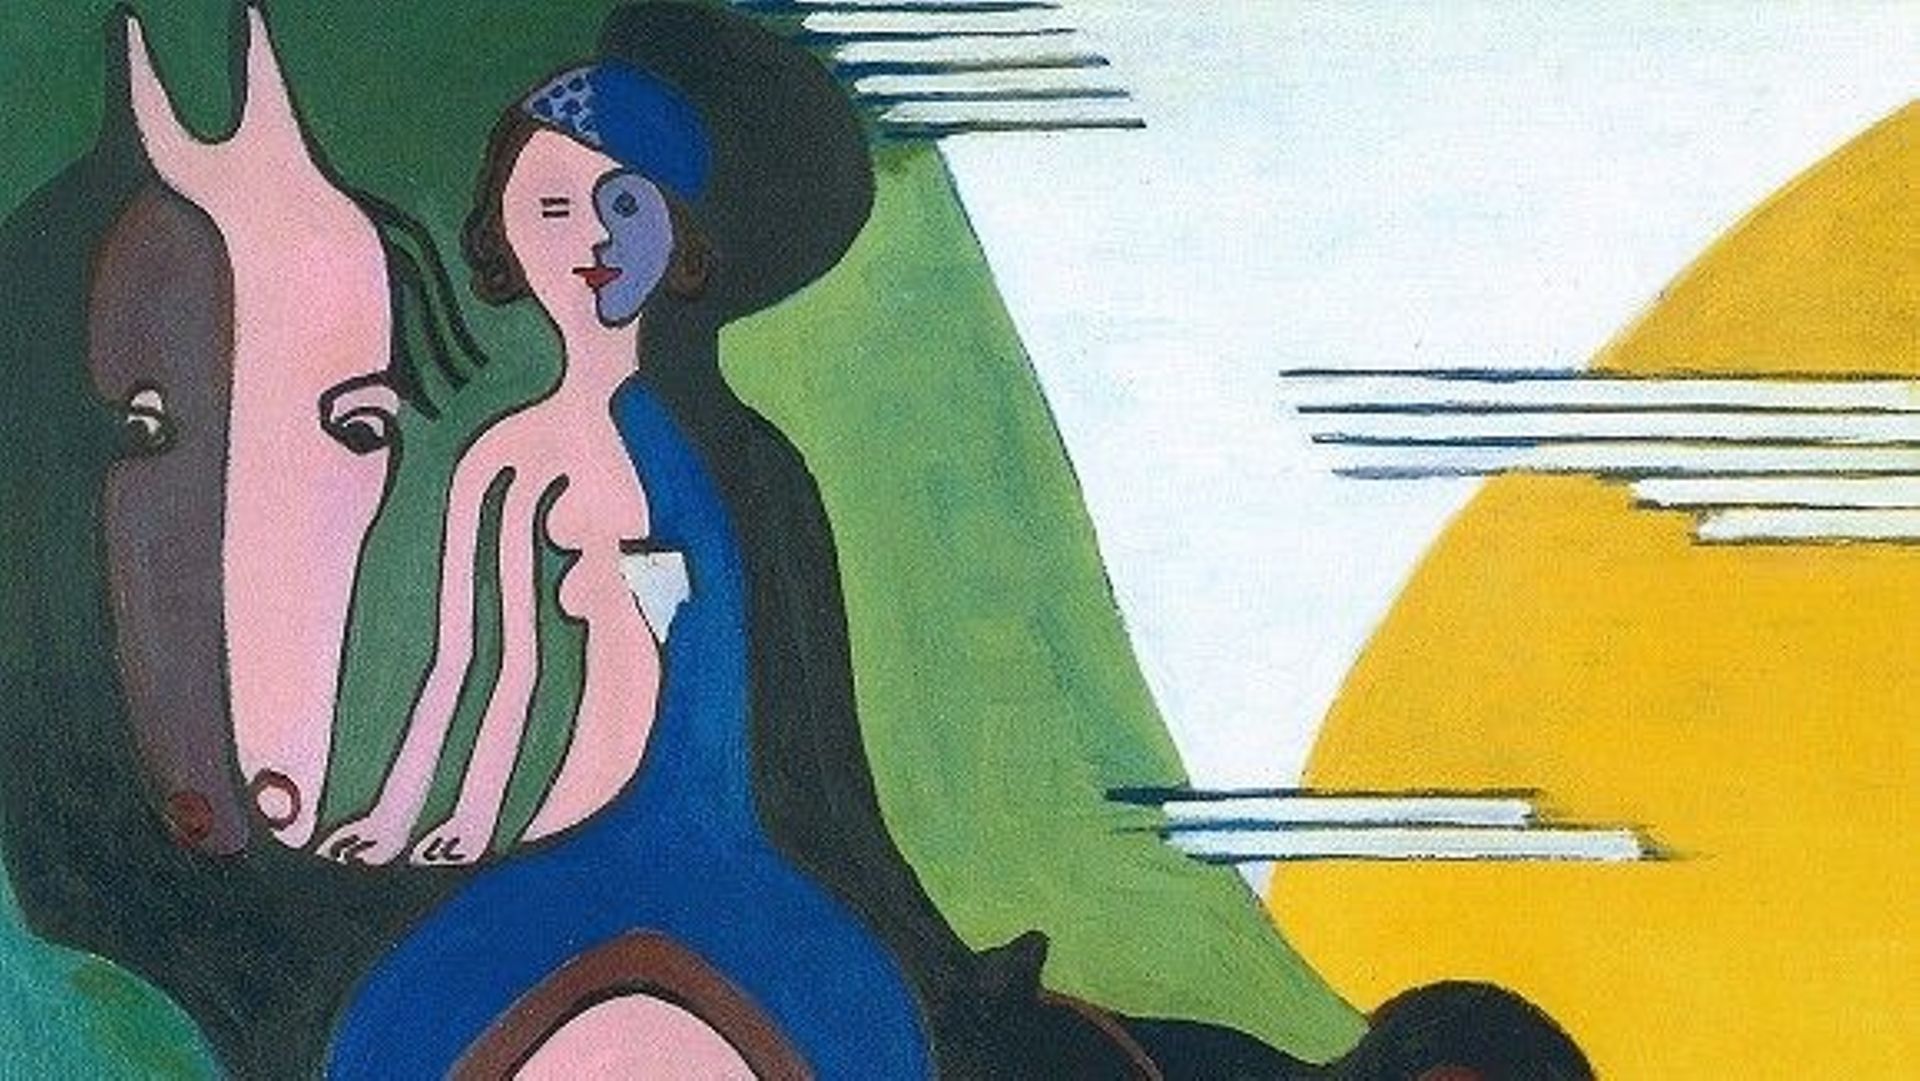 "Ernst Ludwig Kirchner était un peintre et graveur expressionniste allemand et l’un des fondateurs du groupe d’artistes Die Brücke ou « The Bridge », un groupe clé menant à la fondation de l’expressionnisme dans l’art du XXe siècle", nous apprend Artvee.